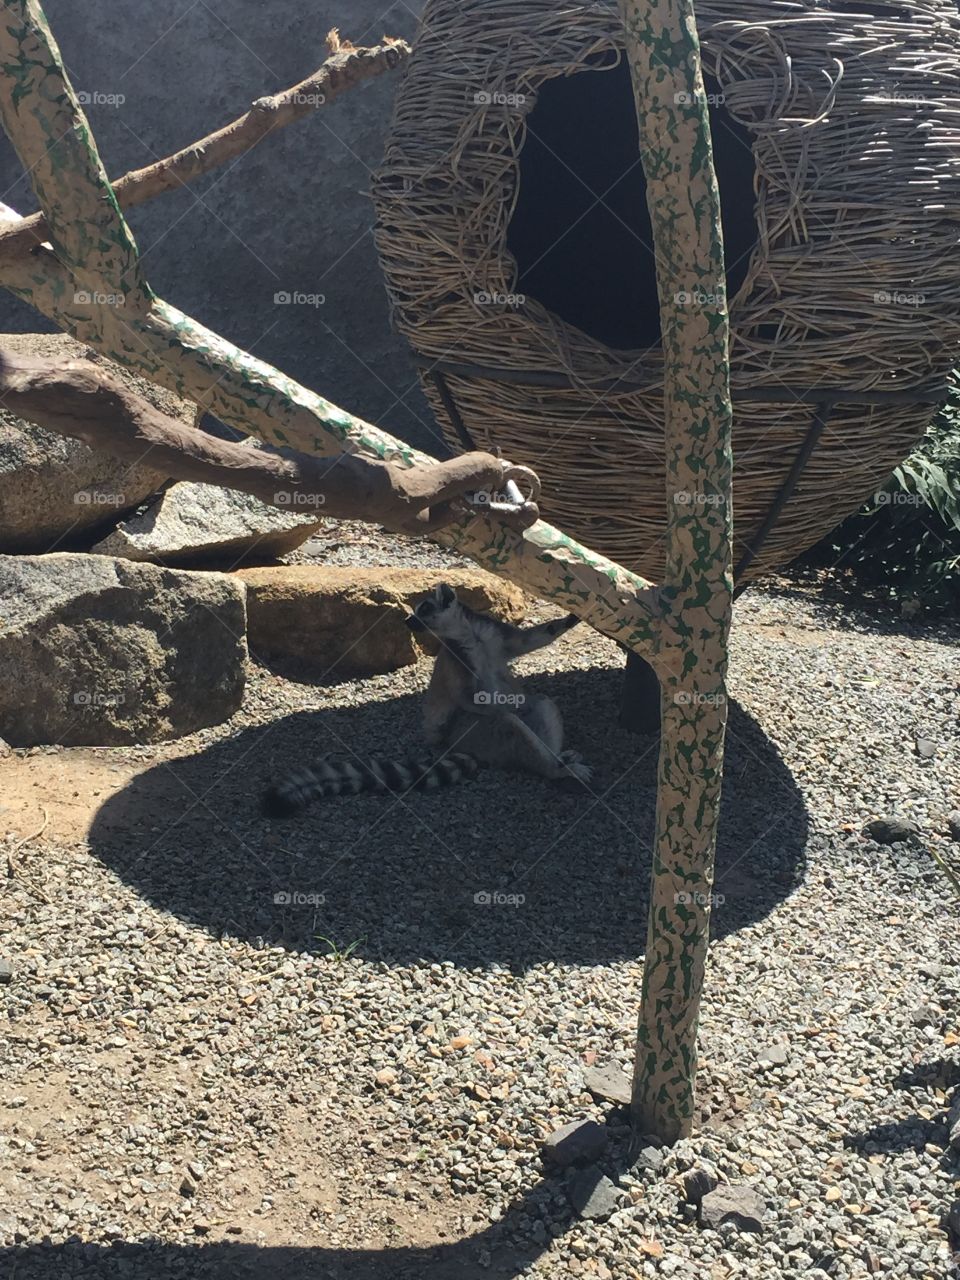 Melbourne Zoo - Lemur 